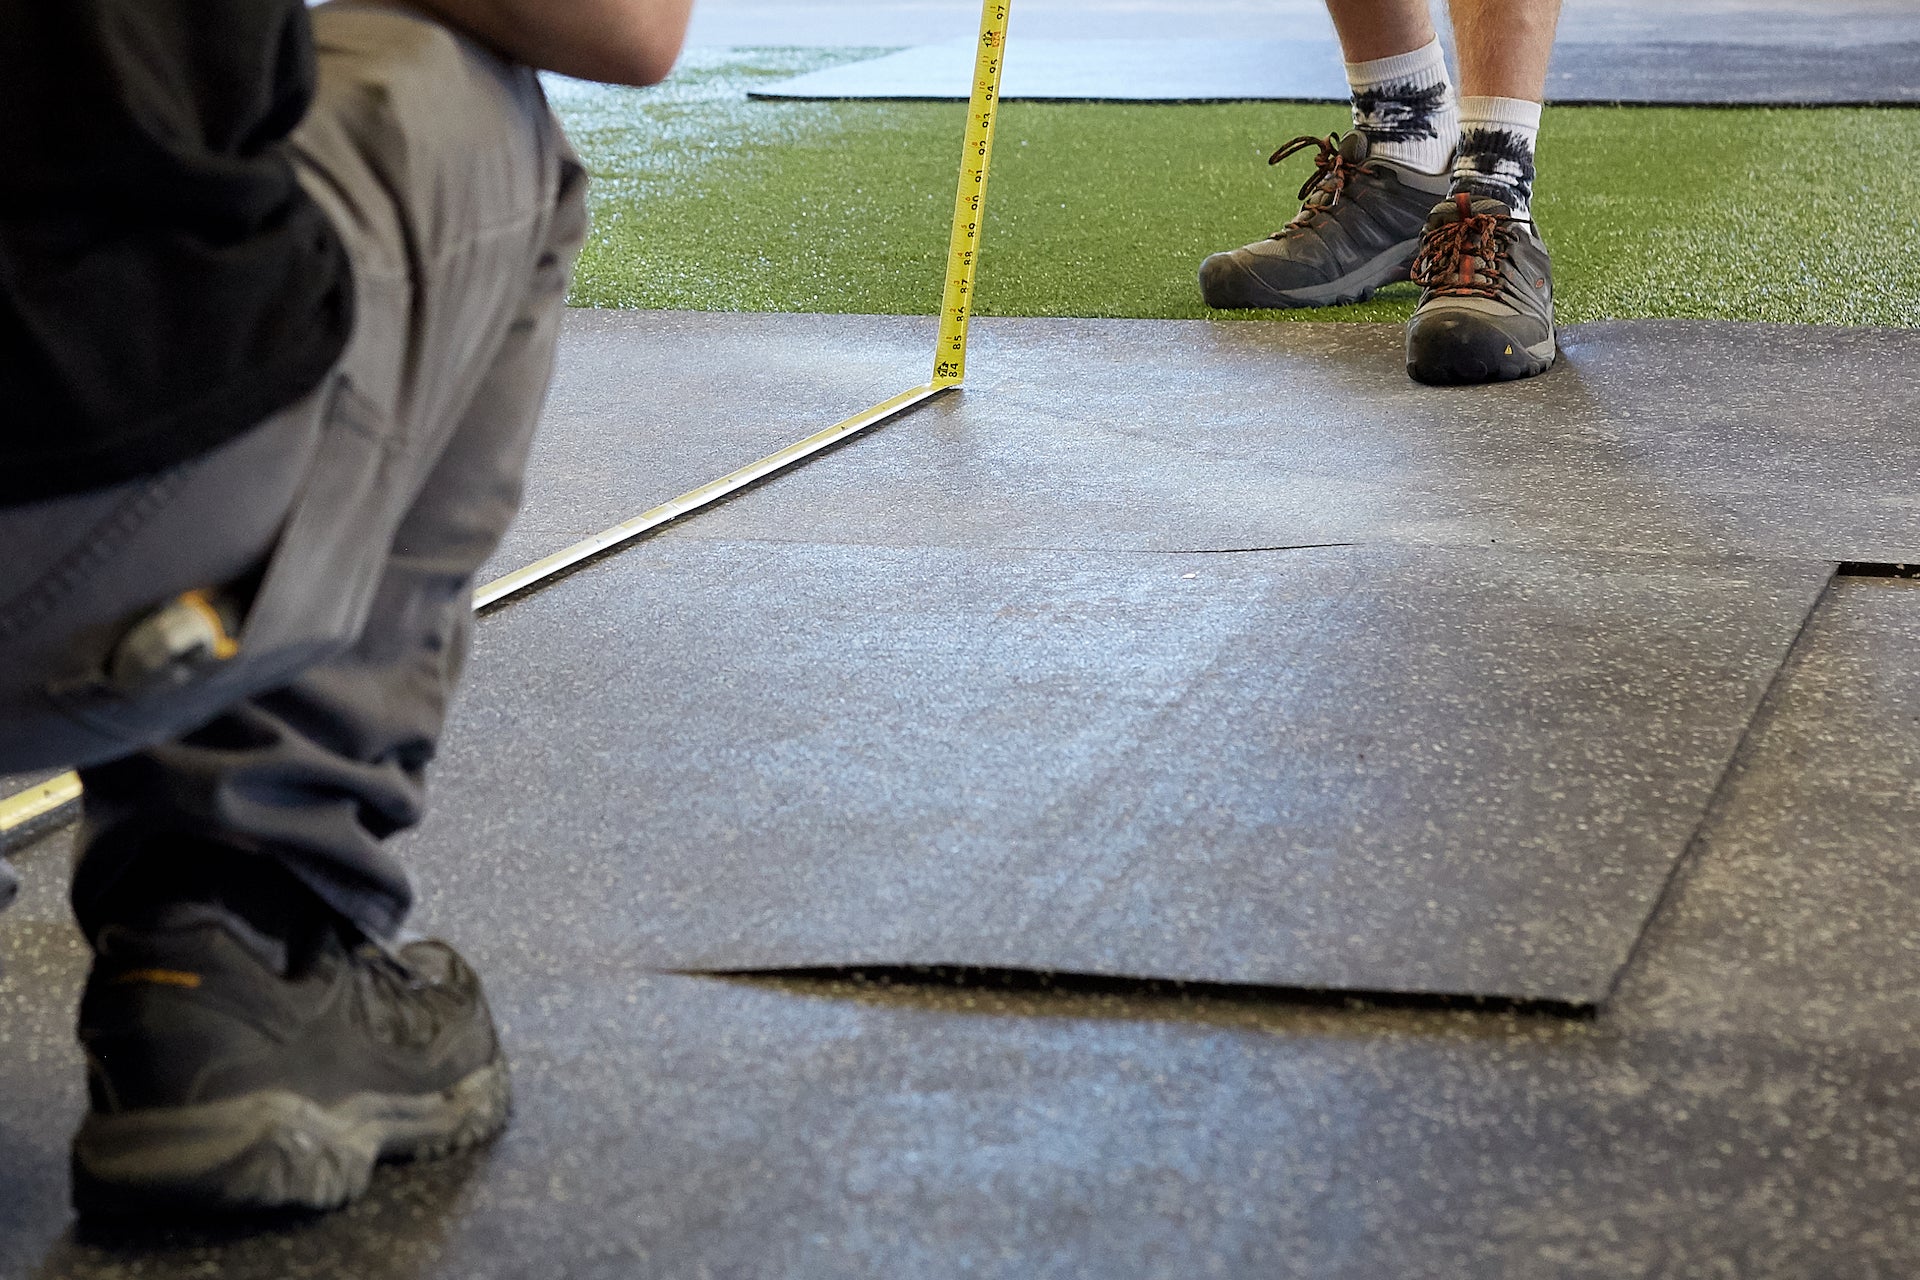 People installing gym flooring